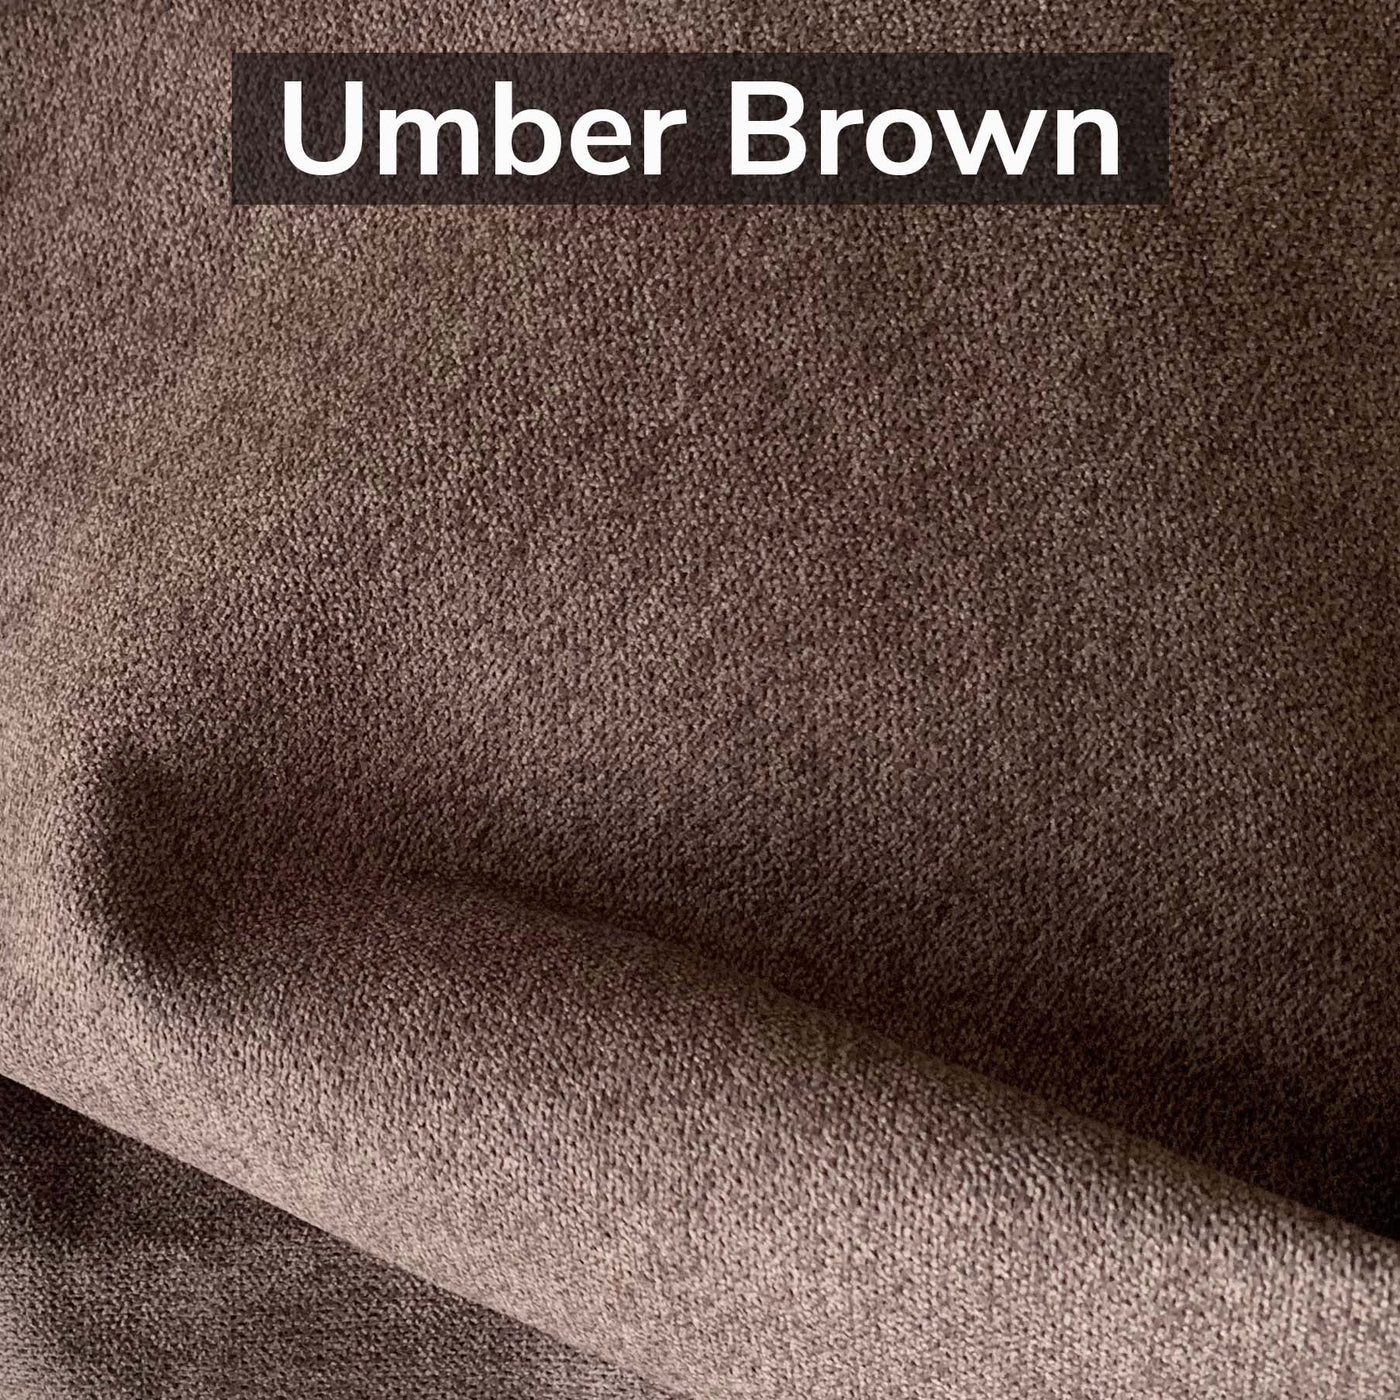 umber brown